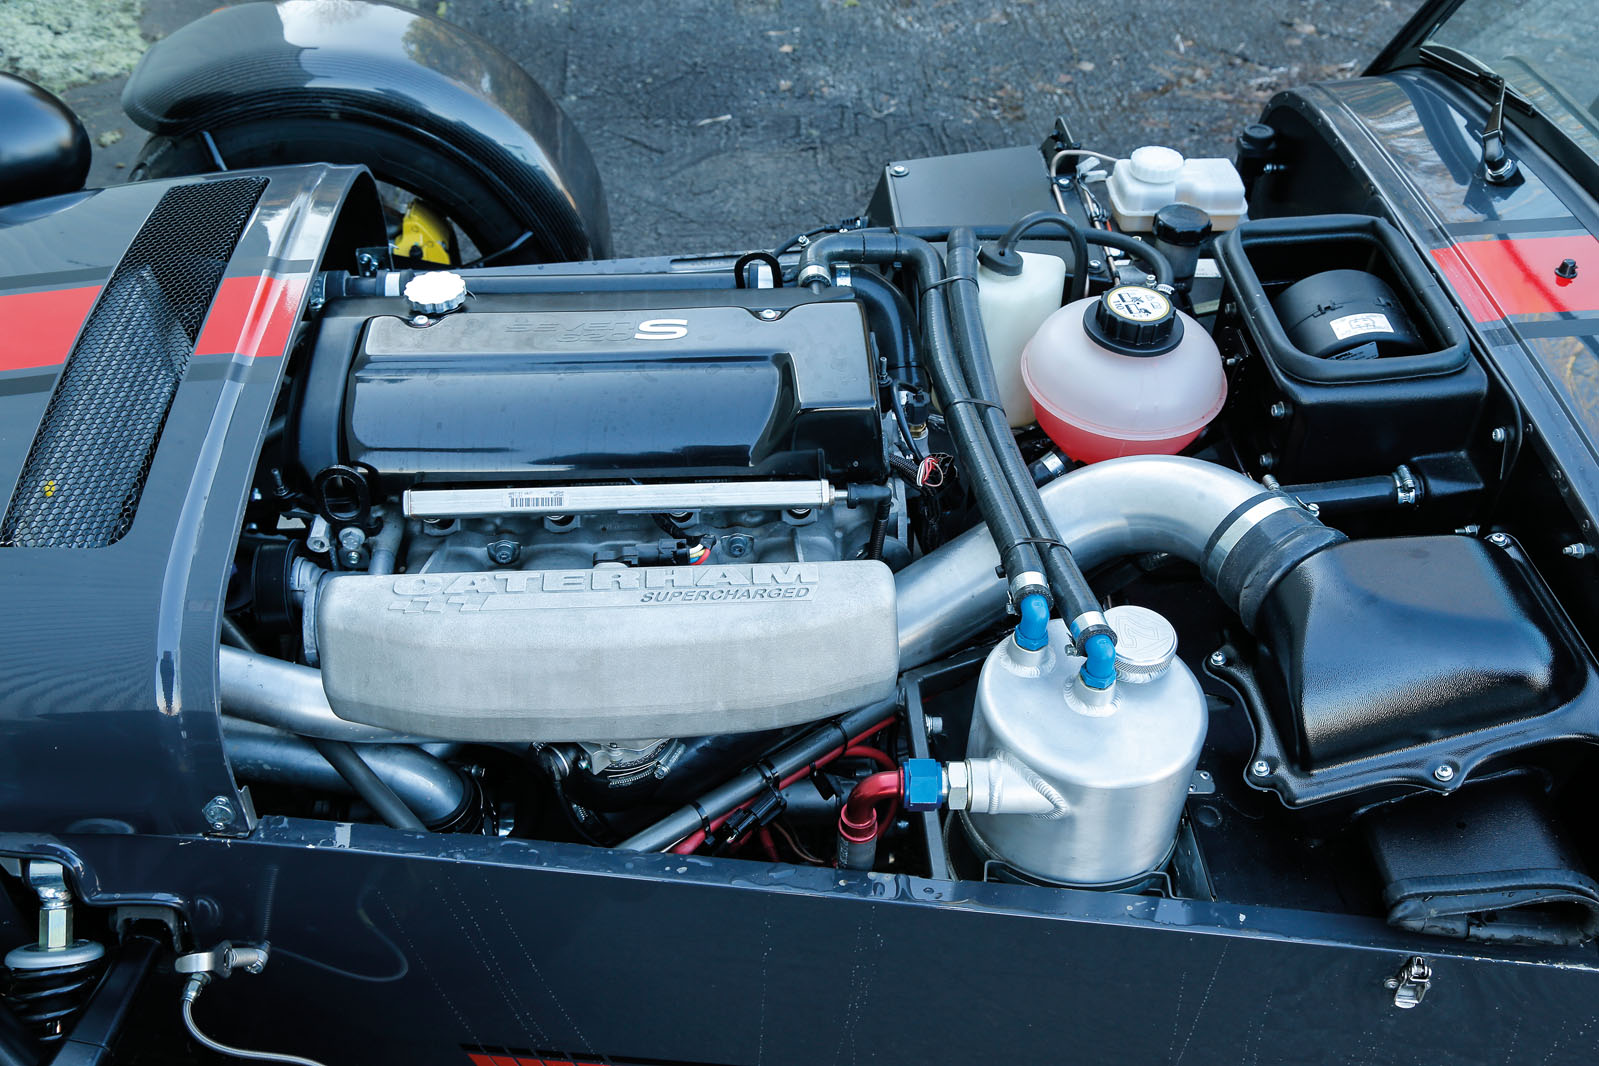 2.0-litre Caterham 620S petrol engine